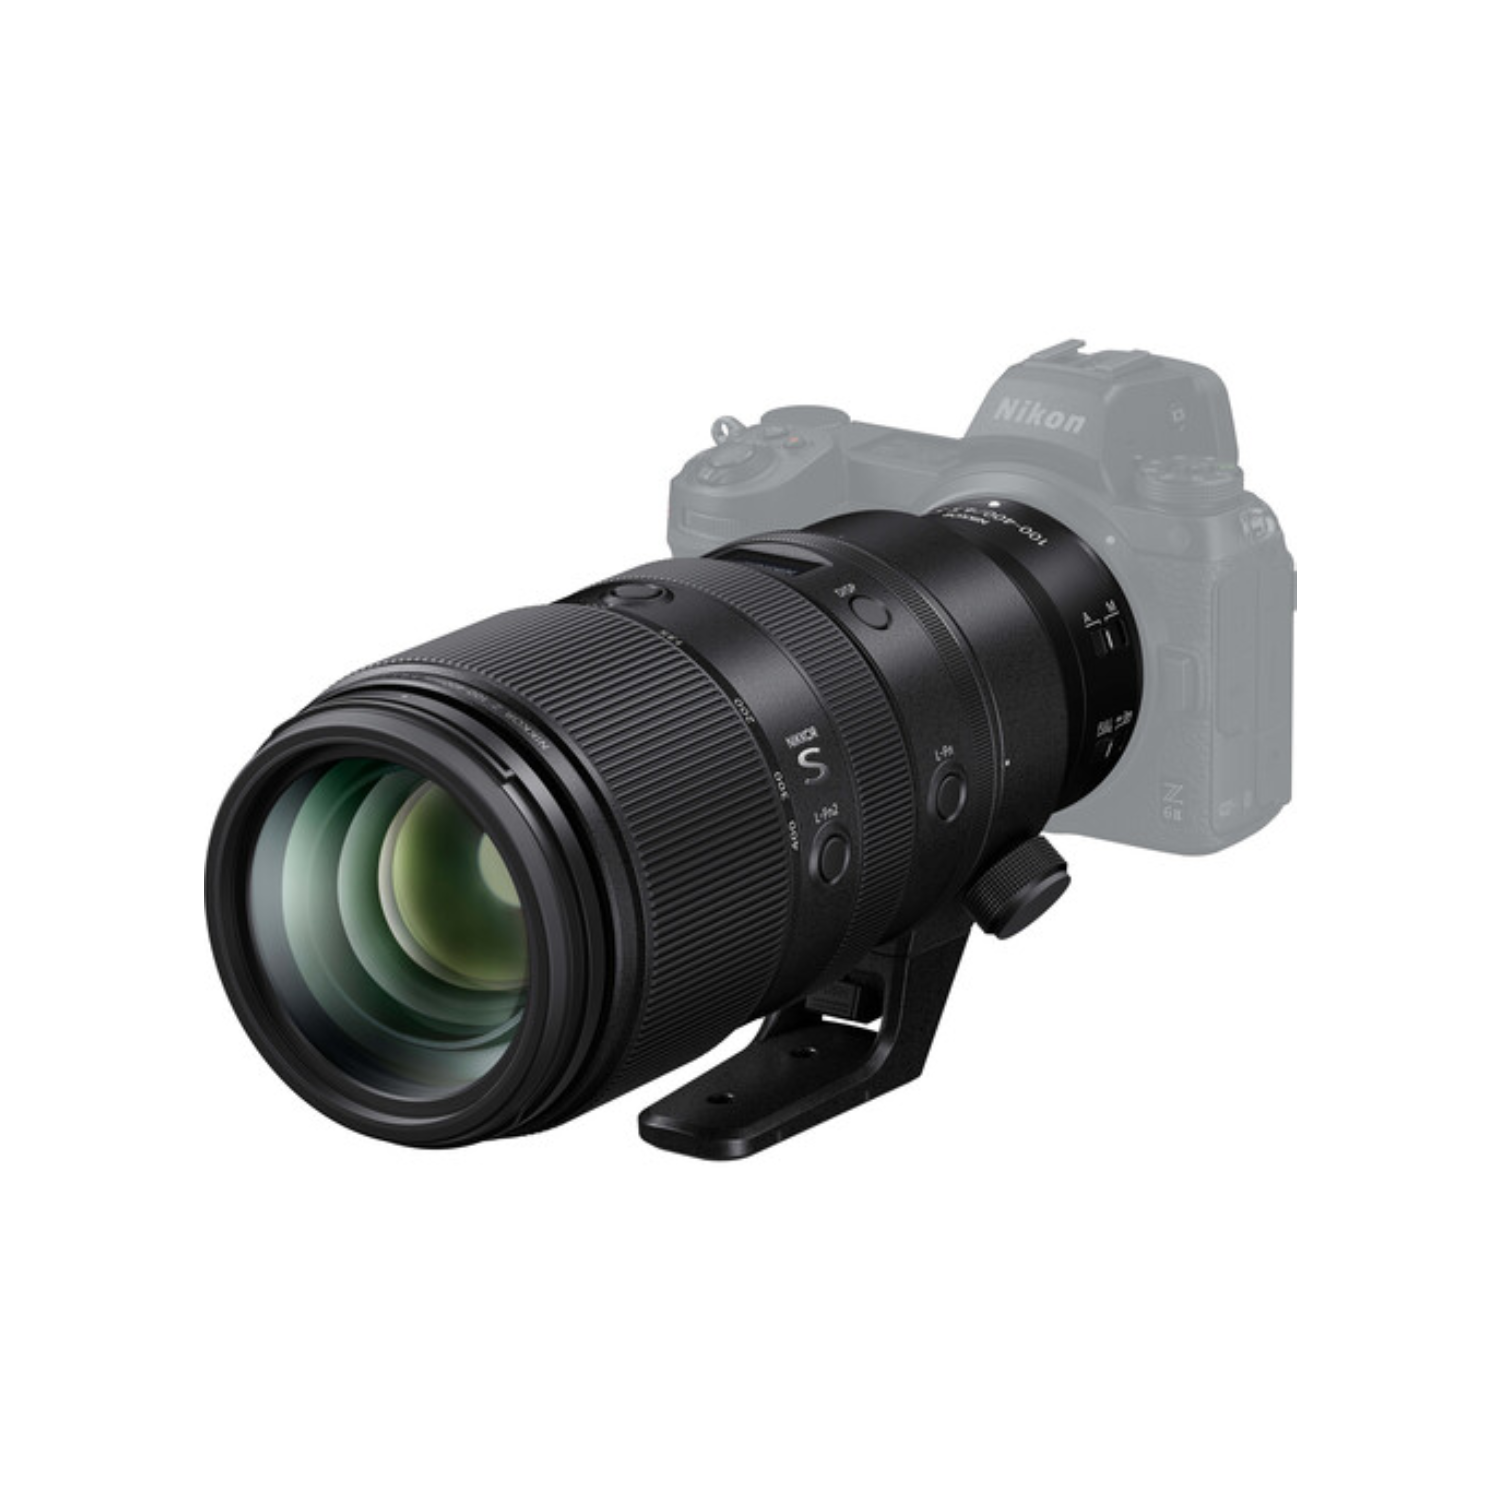 Nikon Nikkor Z 100-400 mm f / 4,5-5,6 VR S Lens